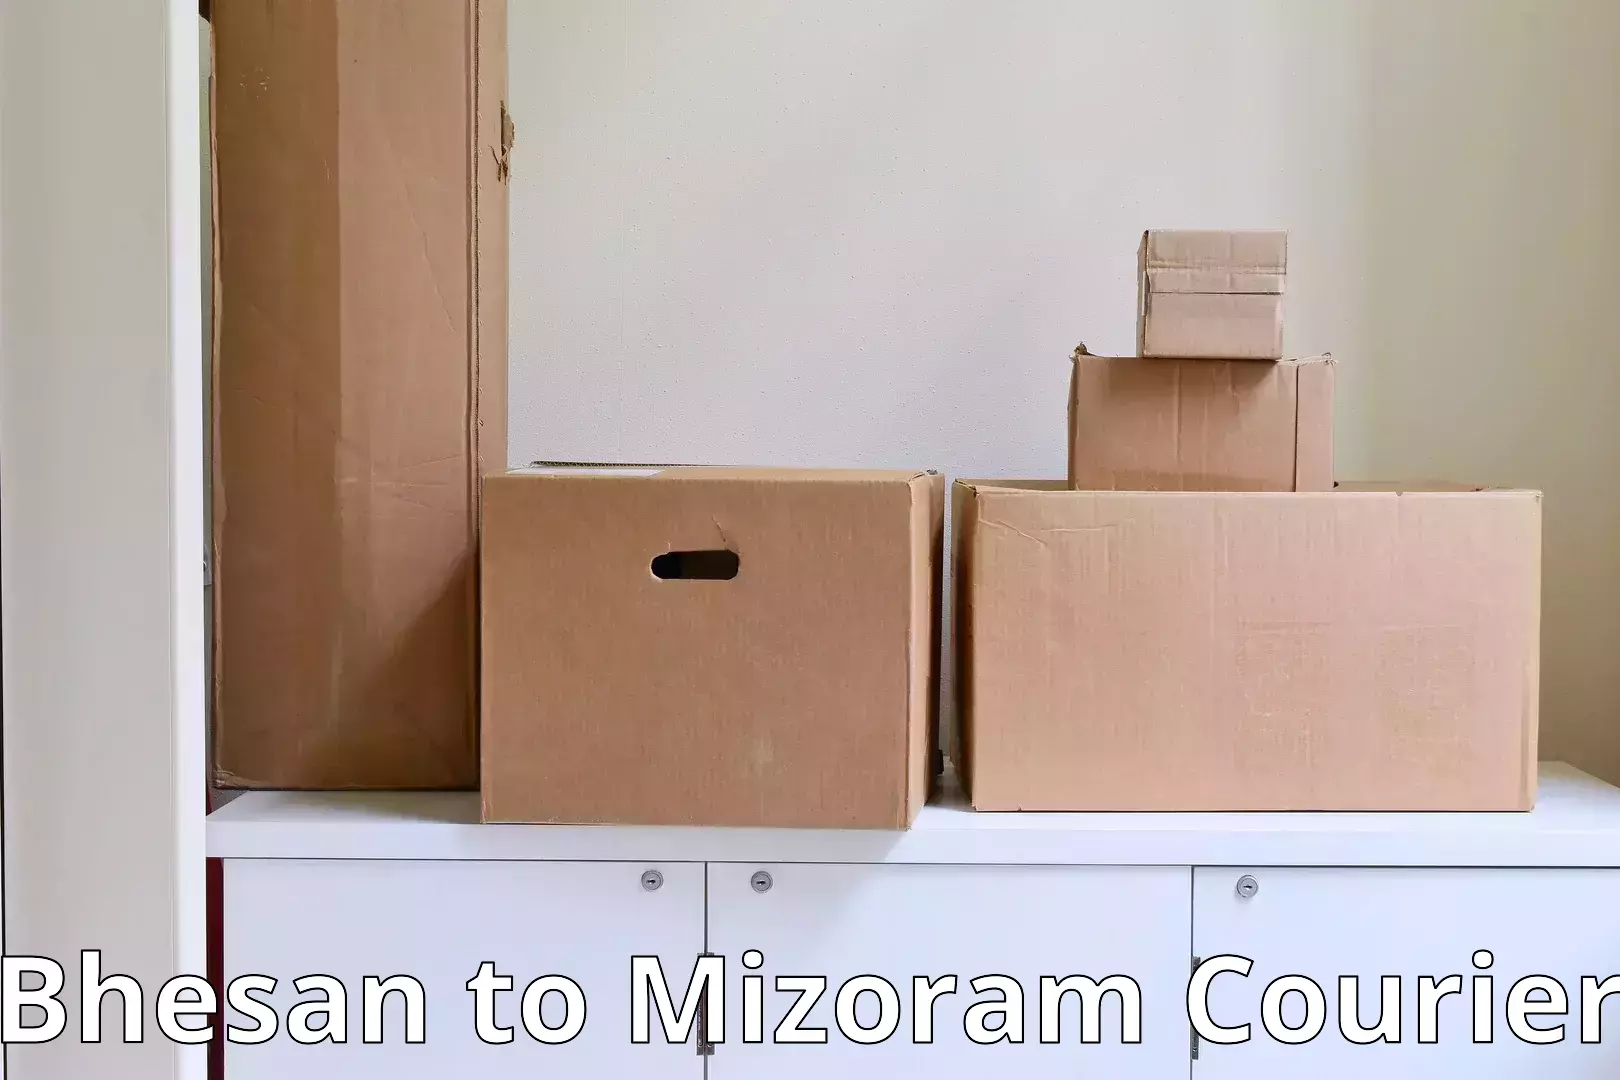 Quality moving and storage Bhesan to Mizoram